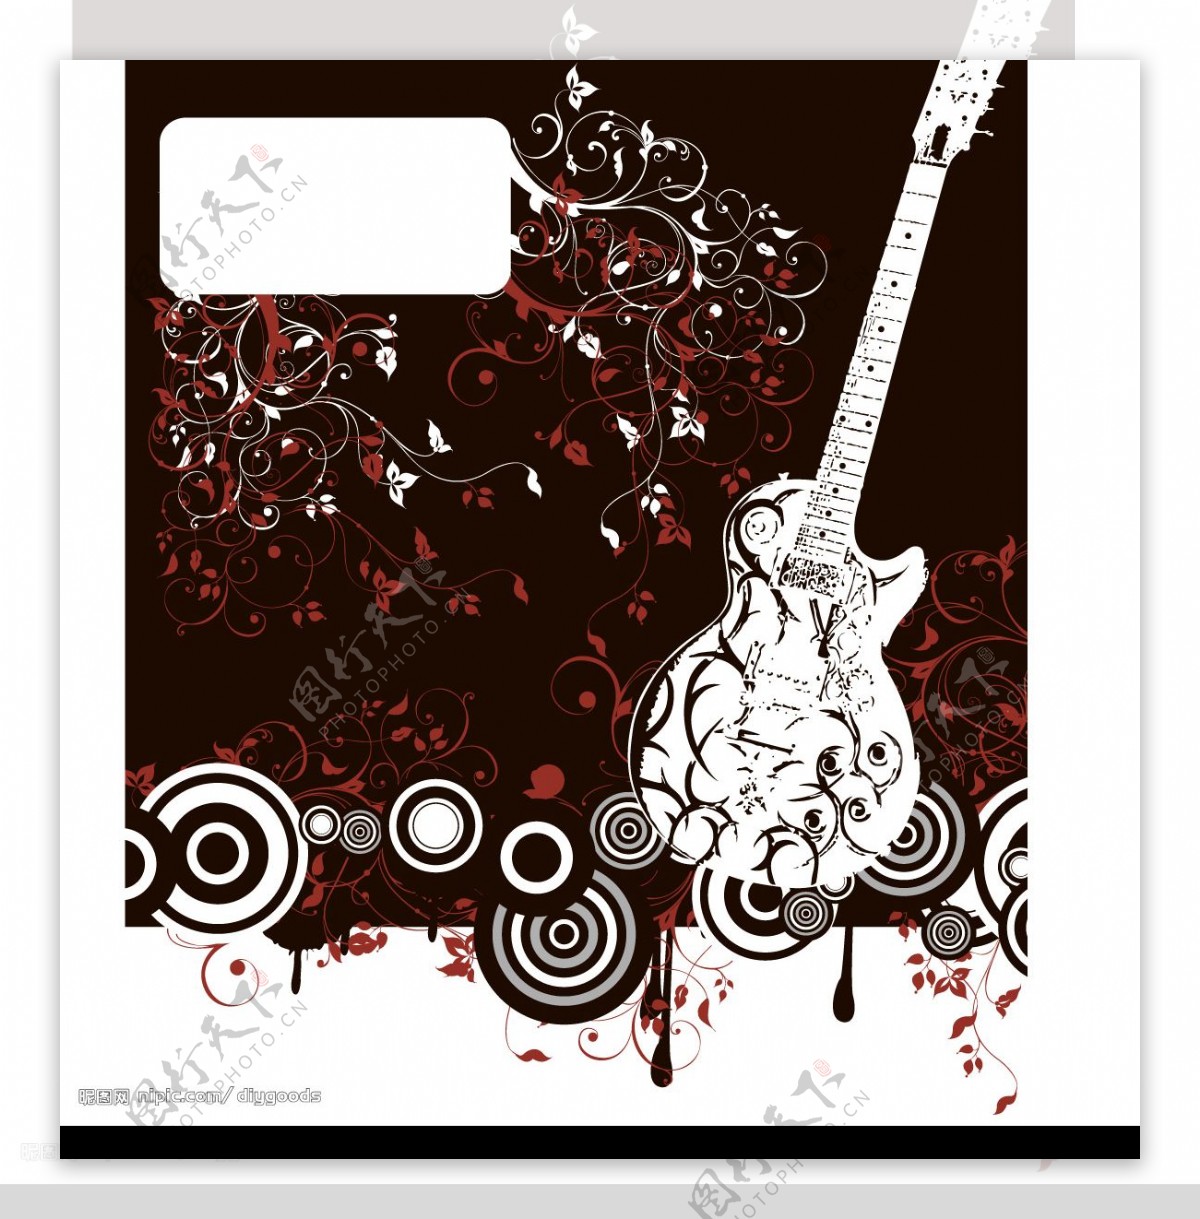 11款潮流吉他插画矢量素材音乐乐器图片